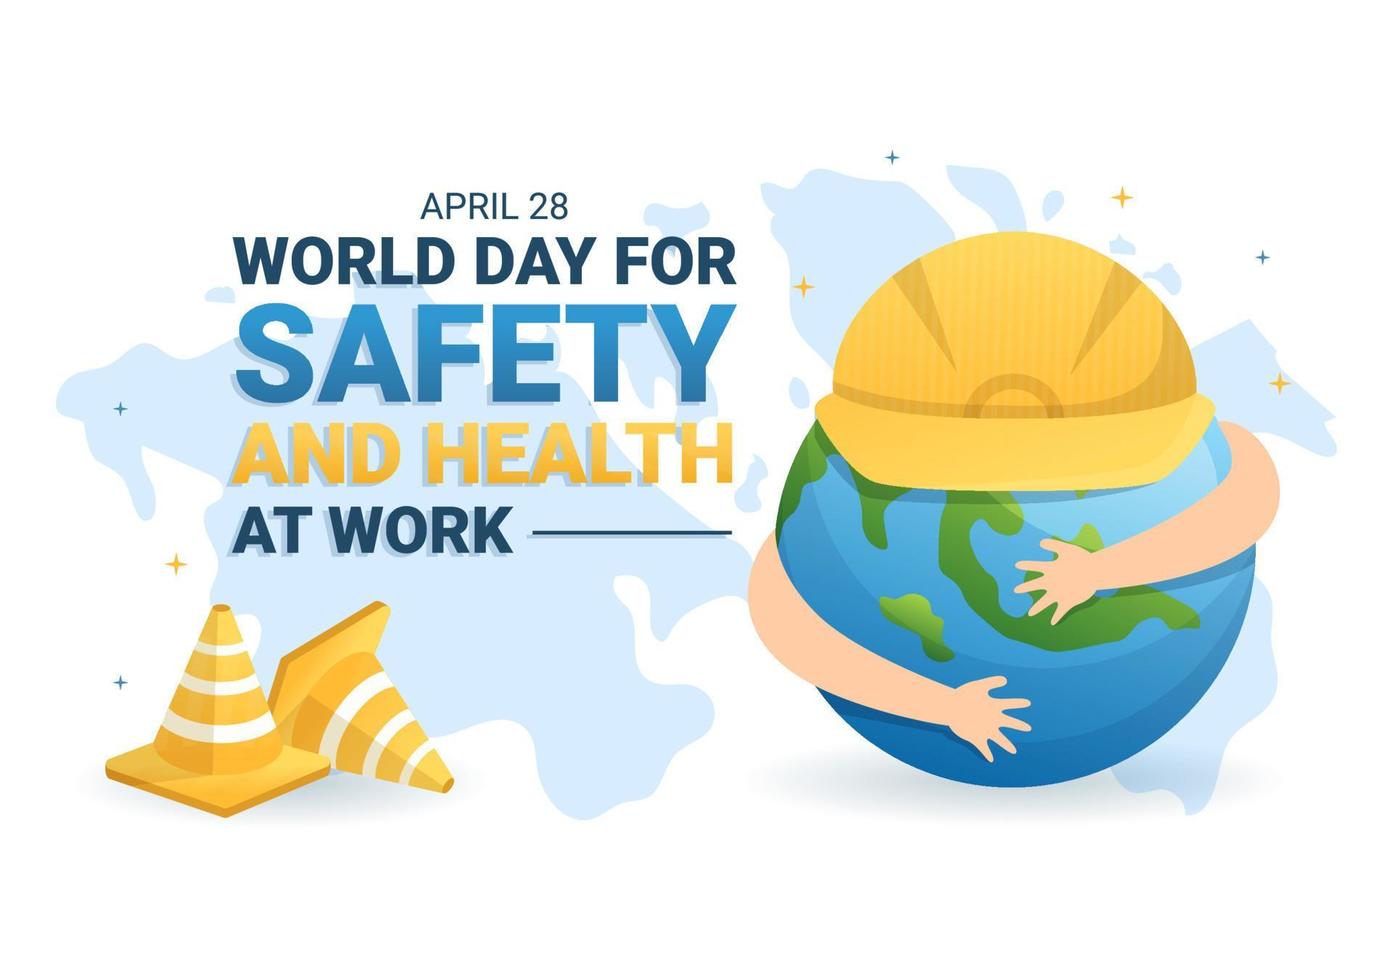 día mundial de la seguridad y la salud en el trabajo el 28 de abril ilustración con herramienta mecánica en caricatura plana dibujada a mano para banner web o plantilla de página de destino vector